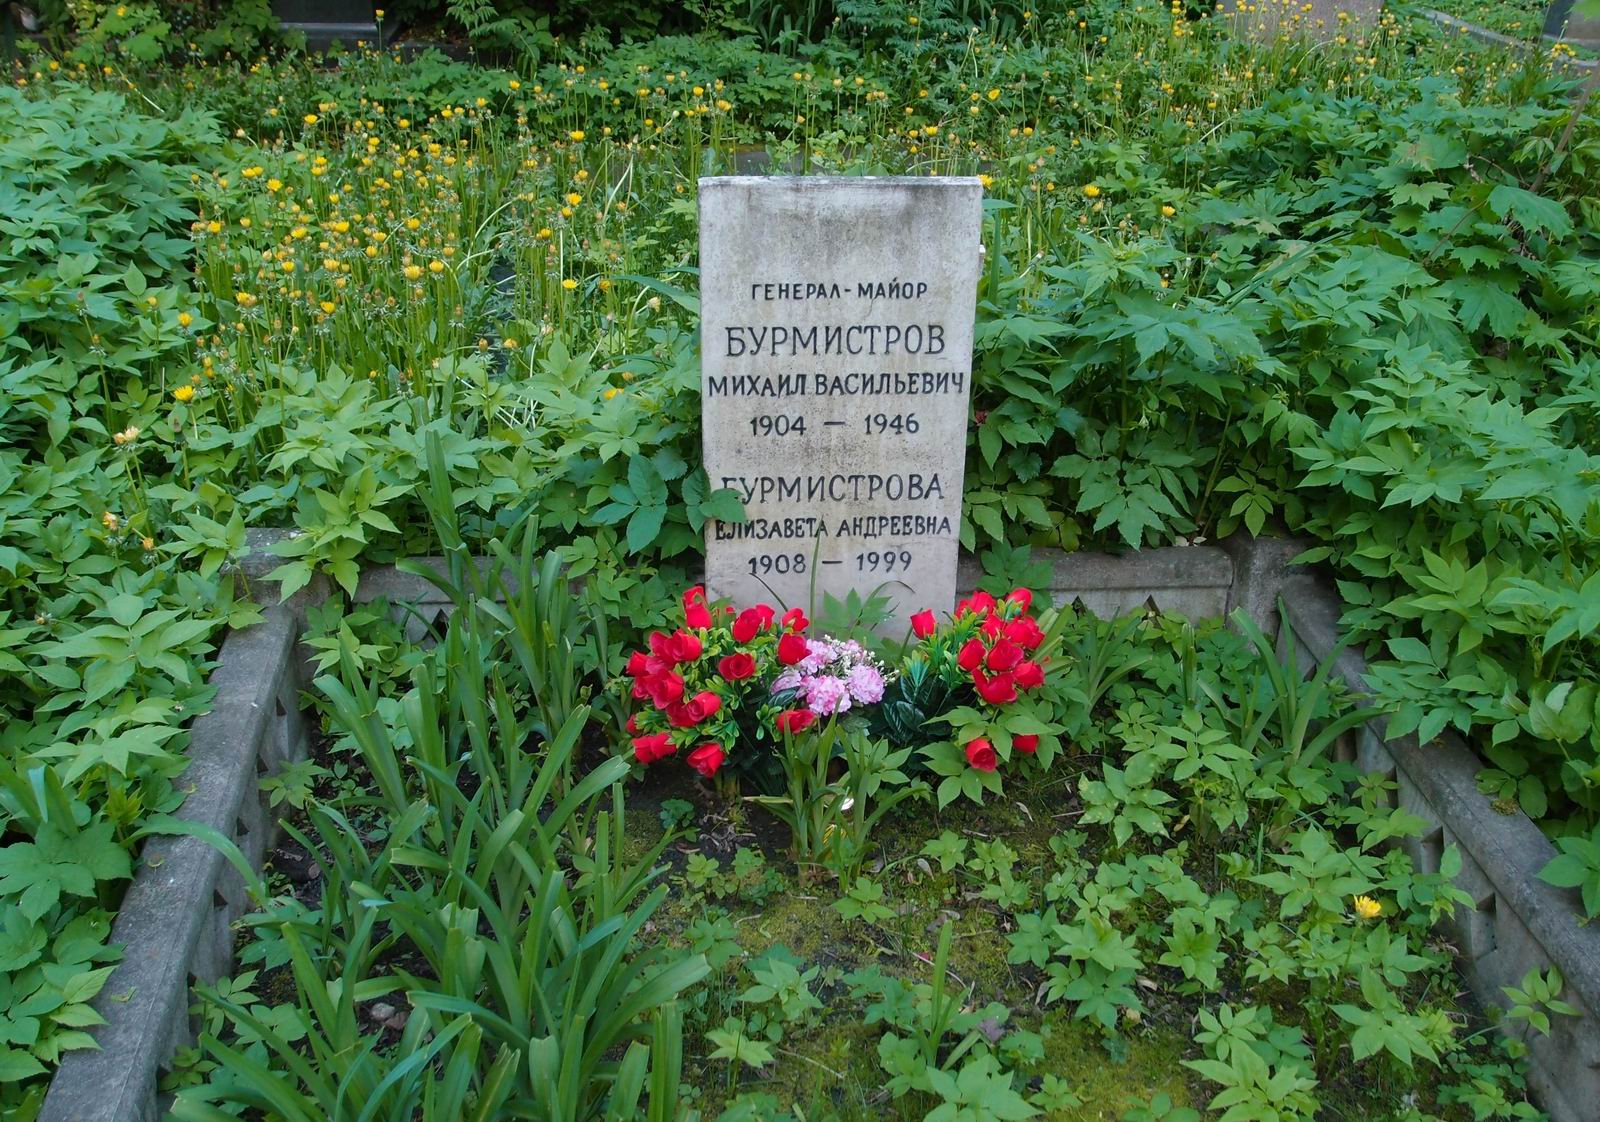 Памятник на могиле Бурмистрова М.В. (1904-1946), на Новодевичьем кладбище (4-14-14).